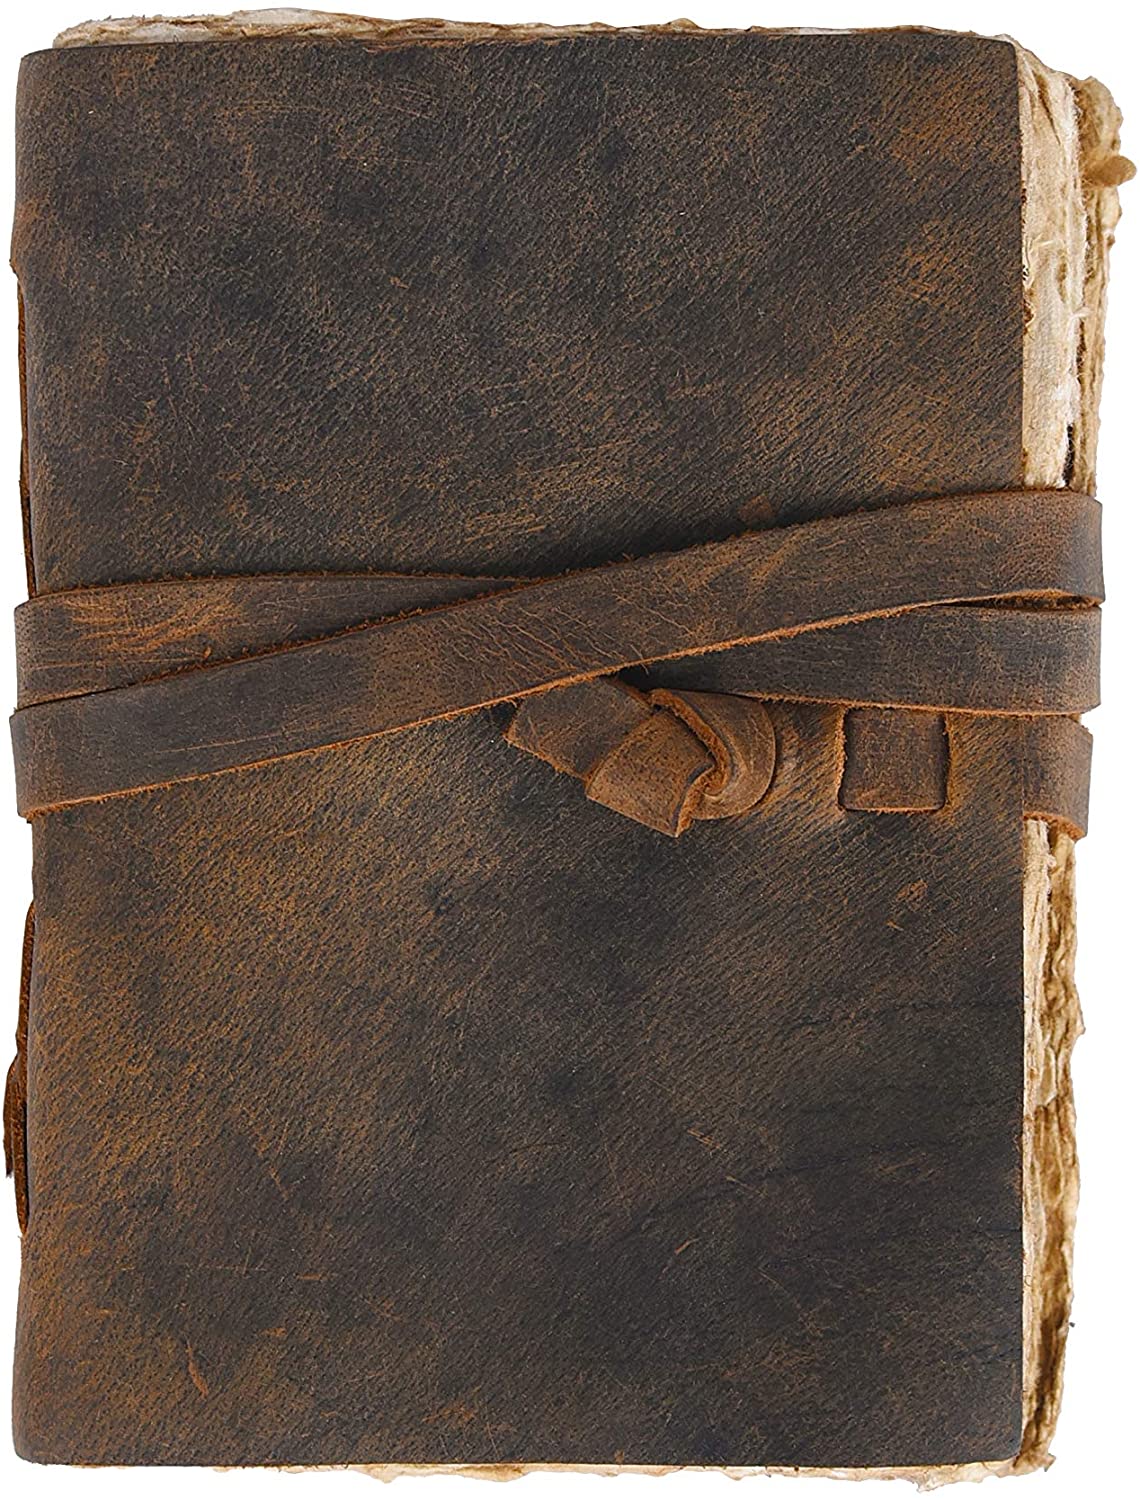 Vintage Leather Journal Blank Deckle Paper - Rustic Teak (5.5 x 4)